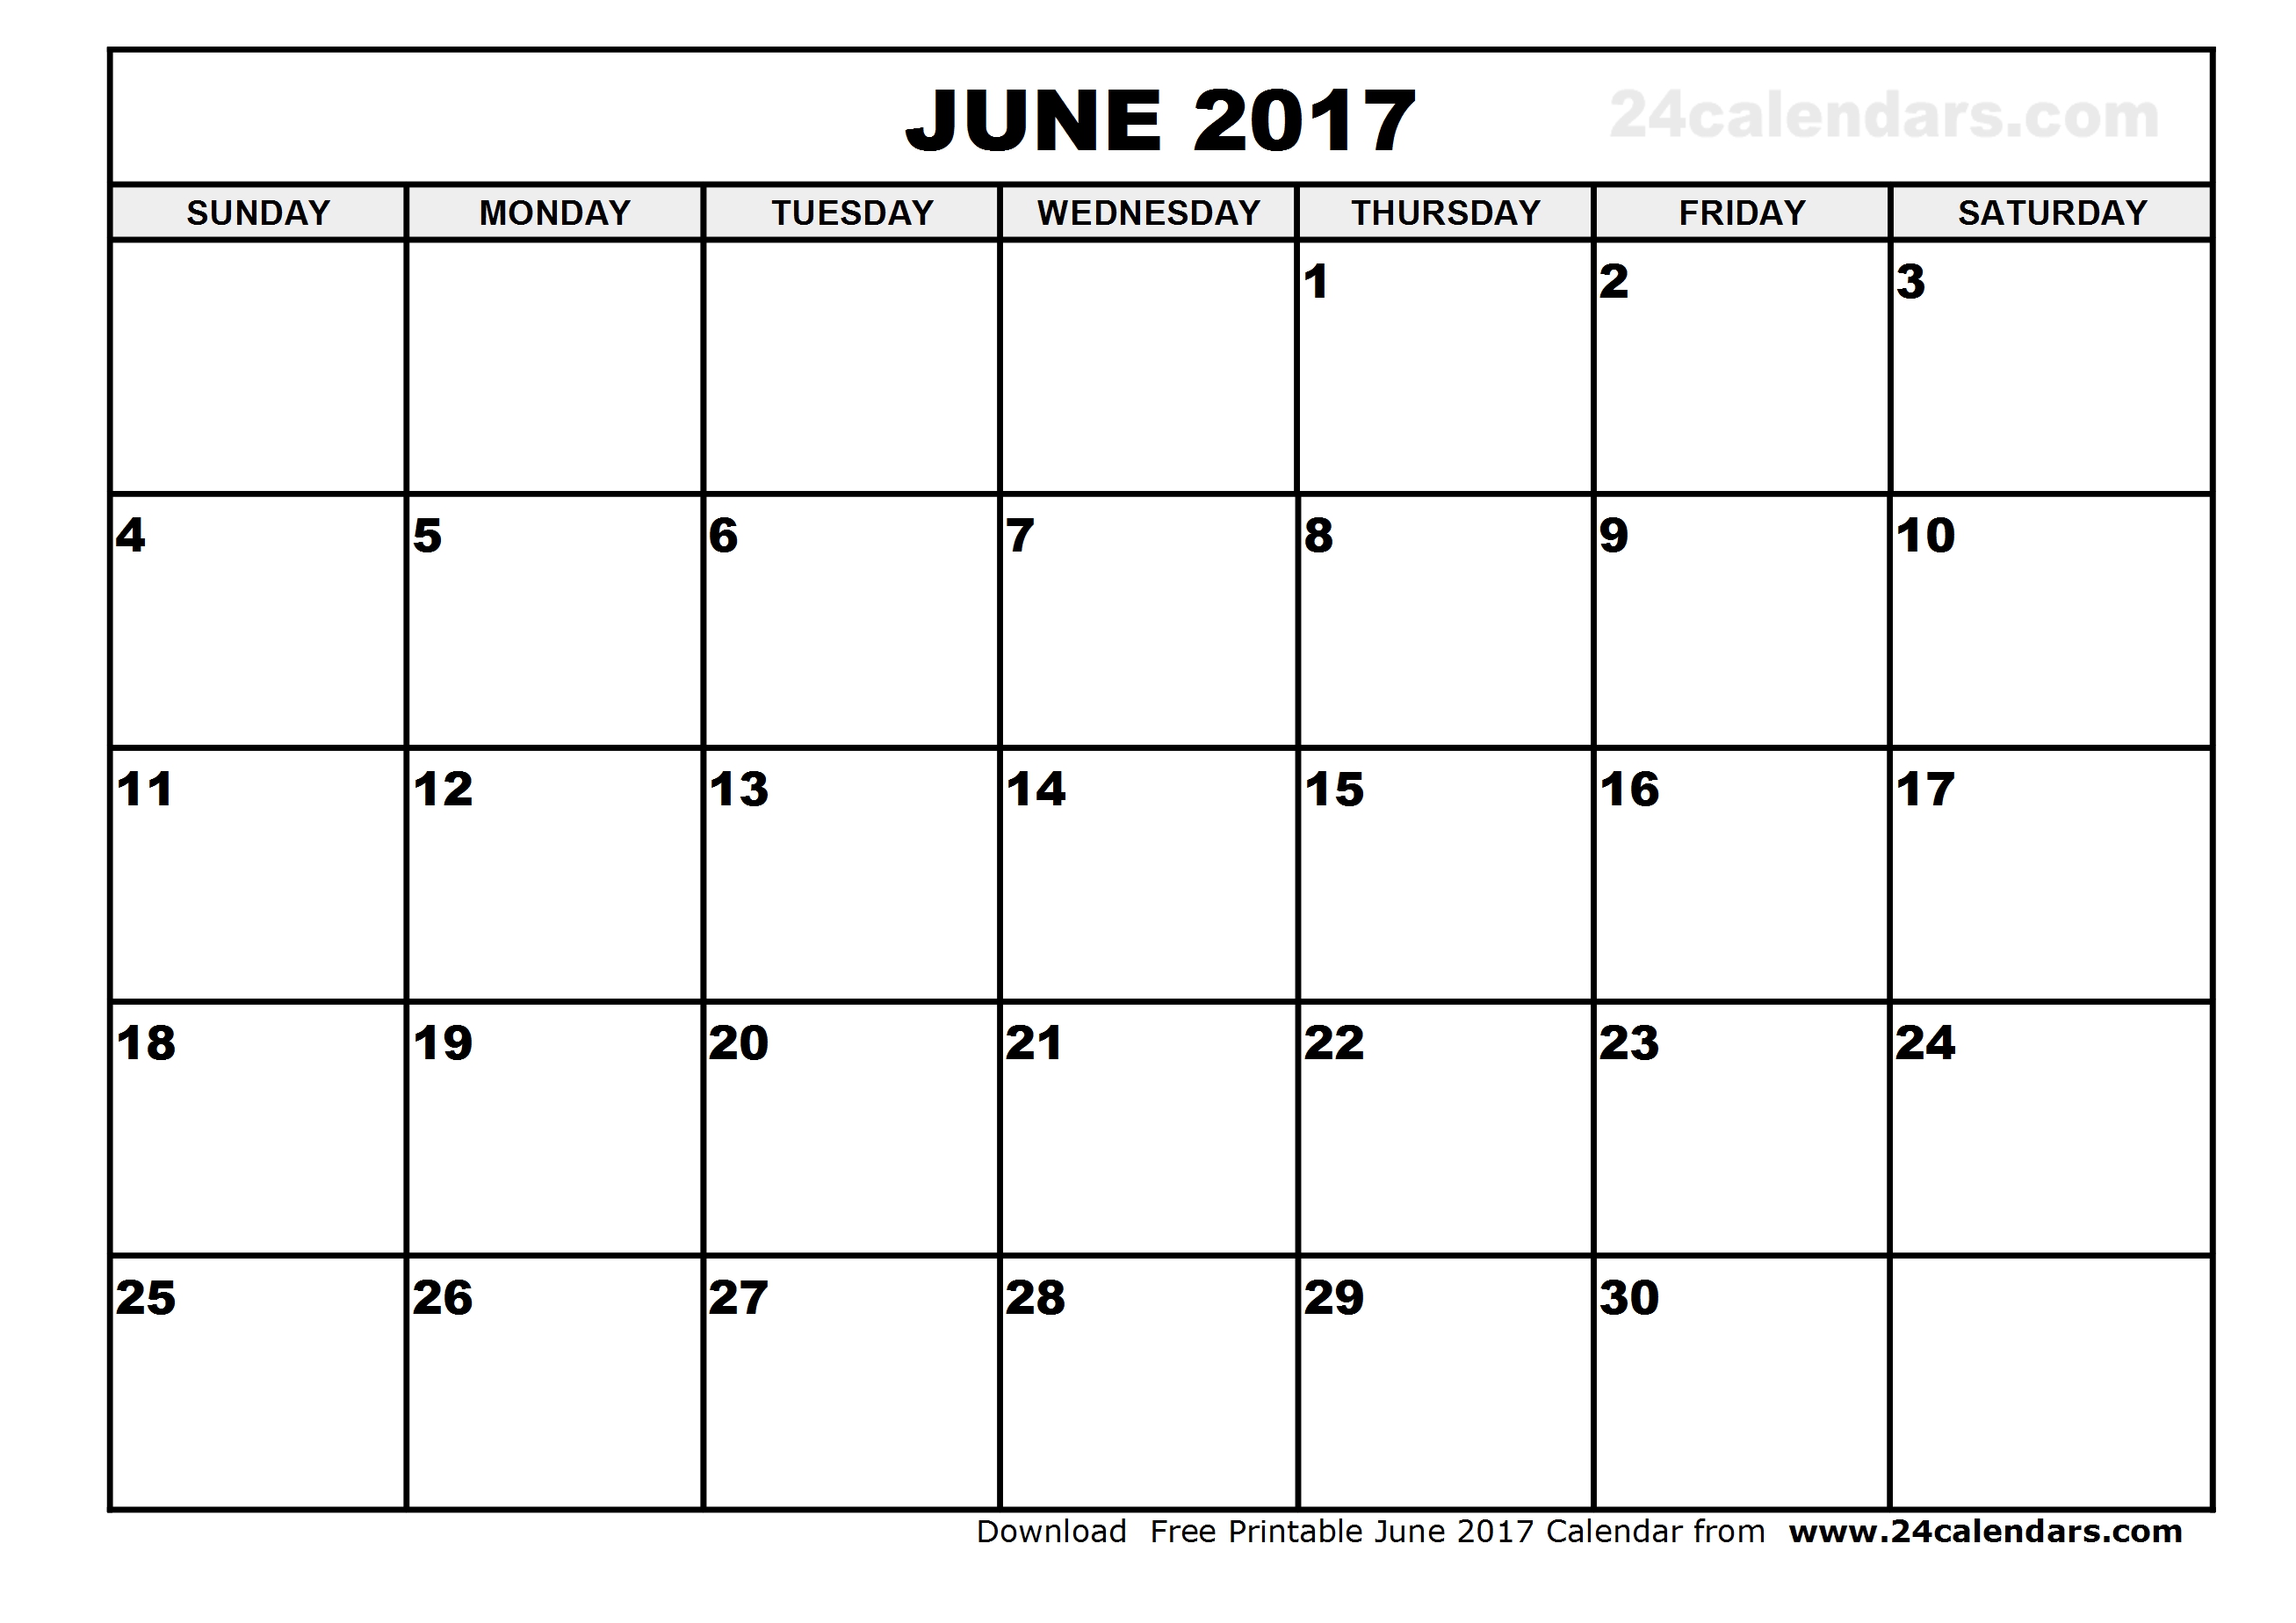 June 2017 Calendar Template | weekly calendar template